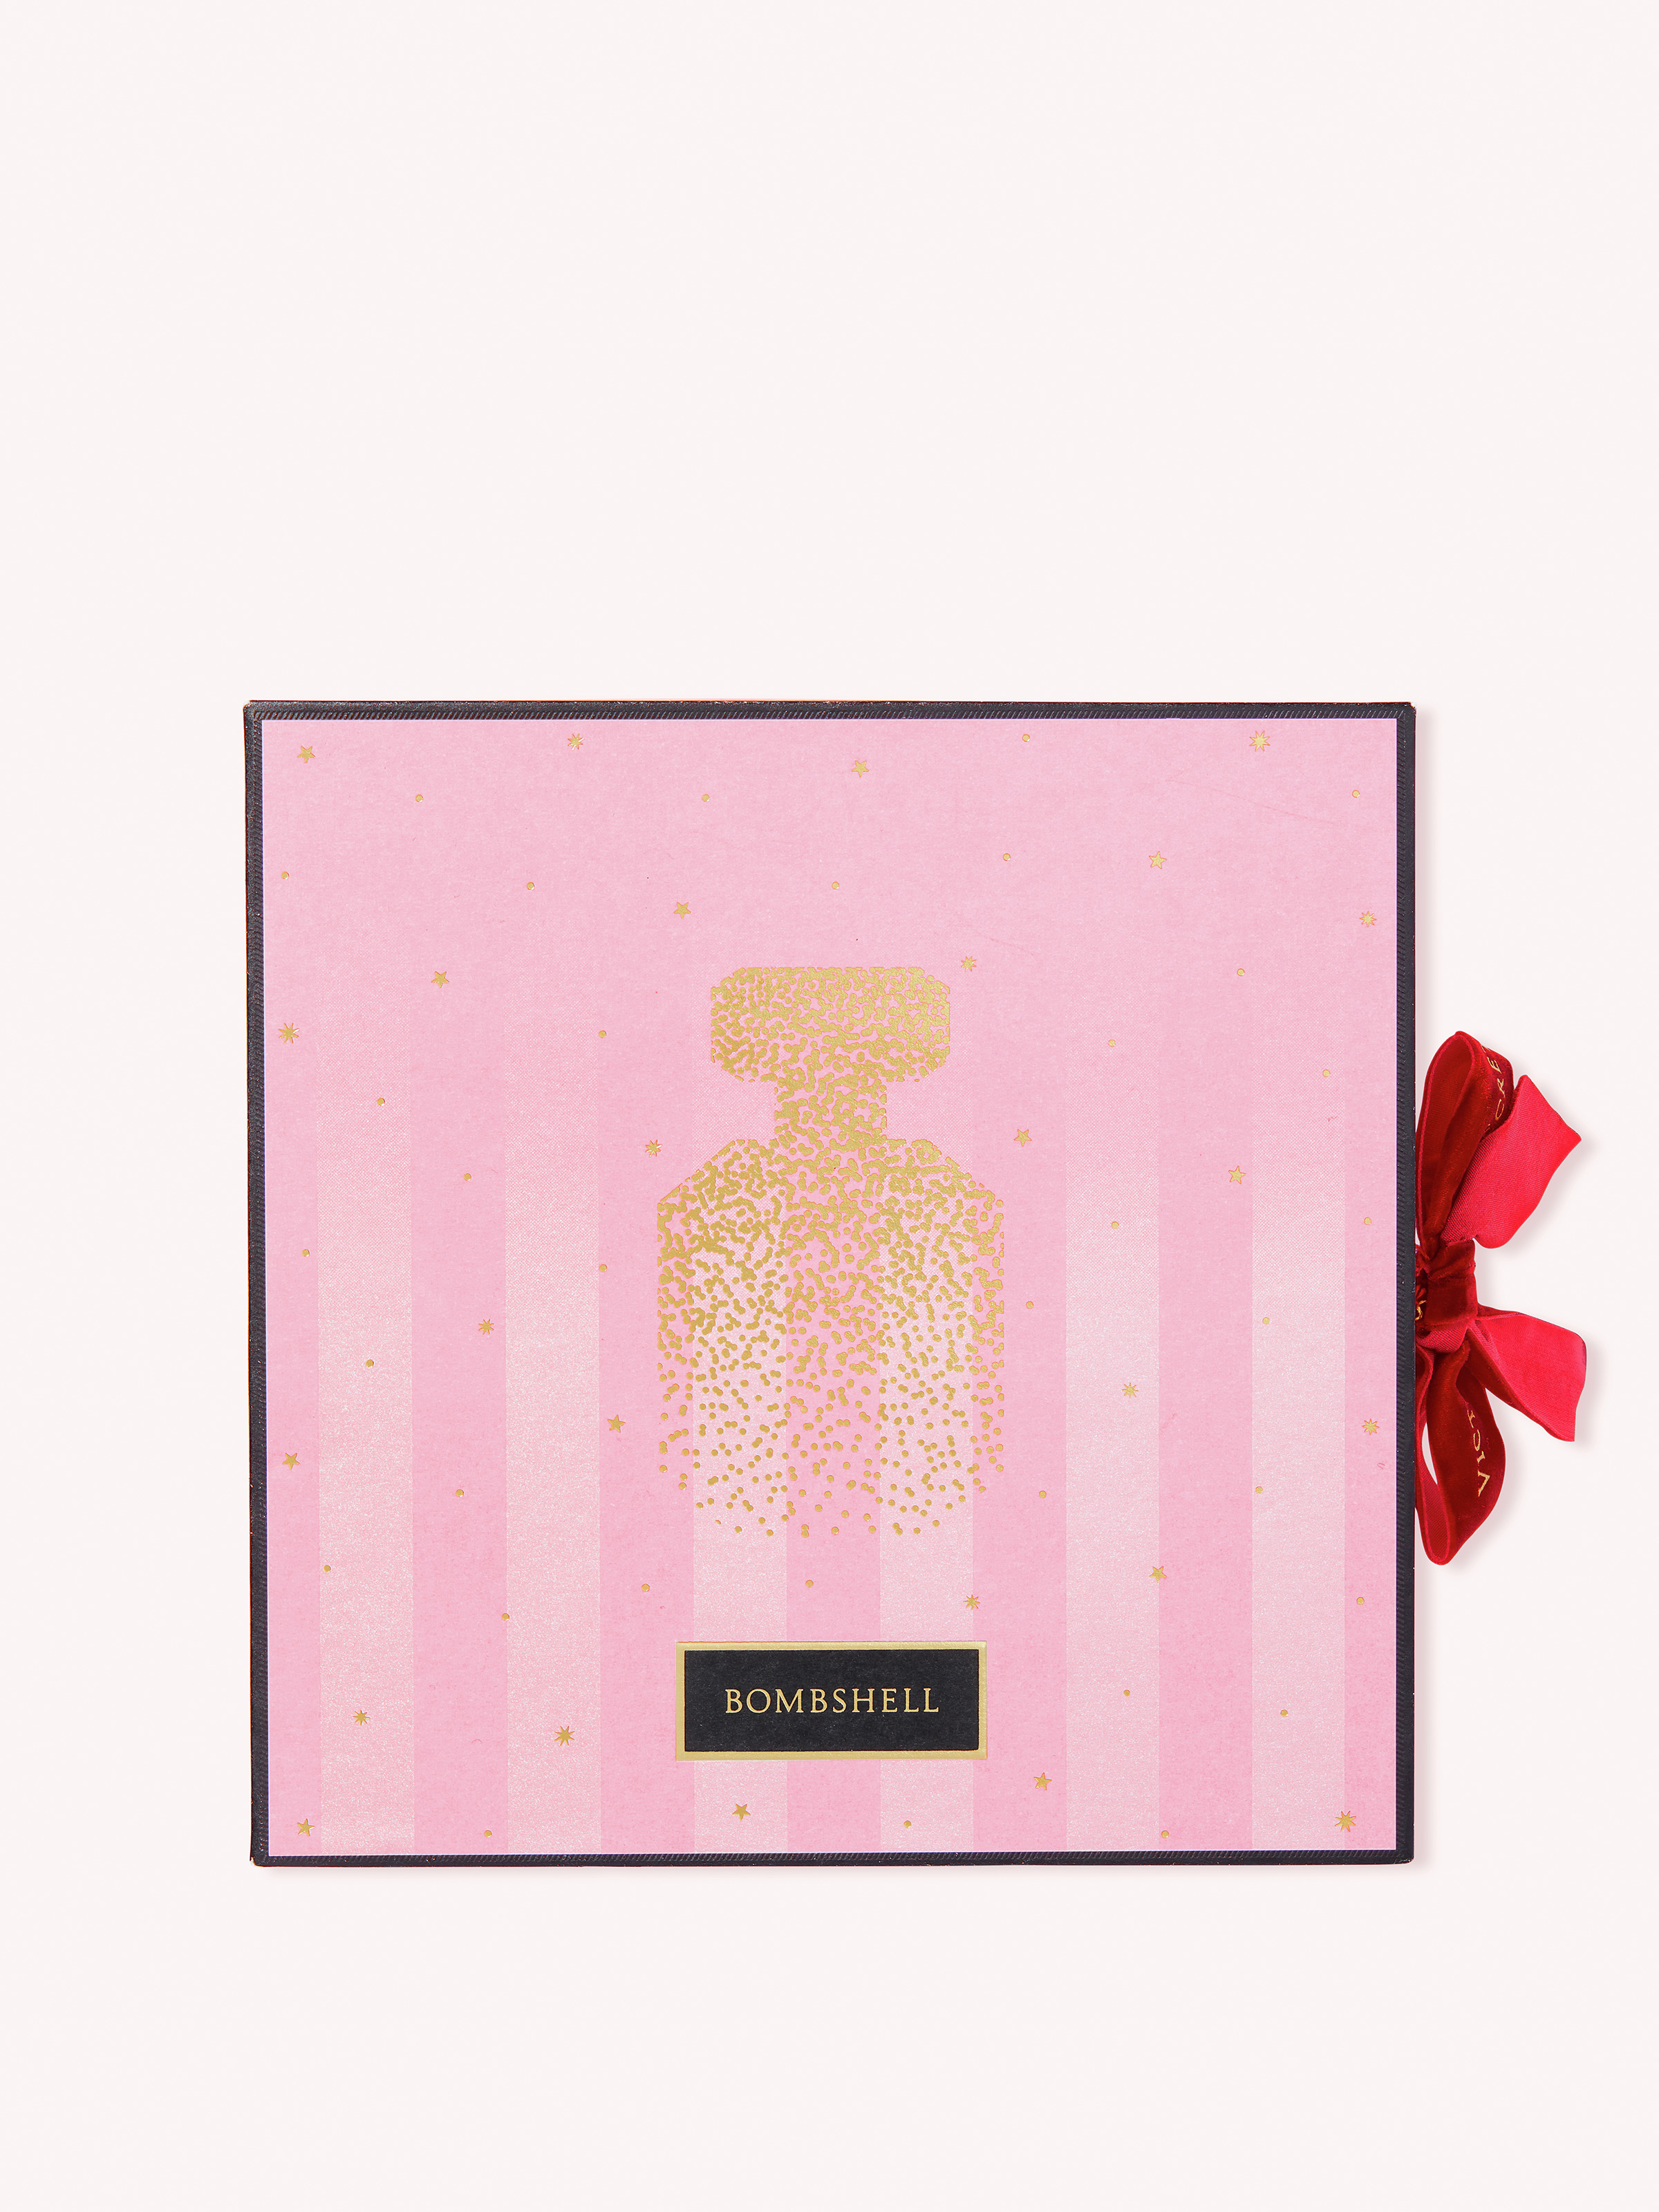 Bombshell Coffret Cadeau Parfum, Description, large